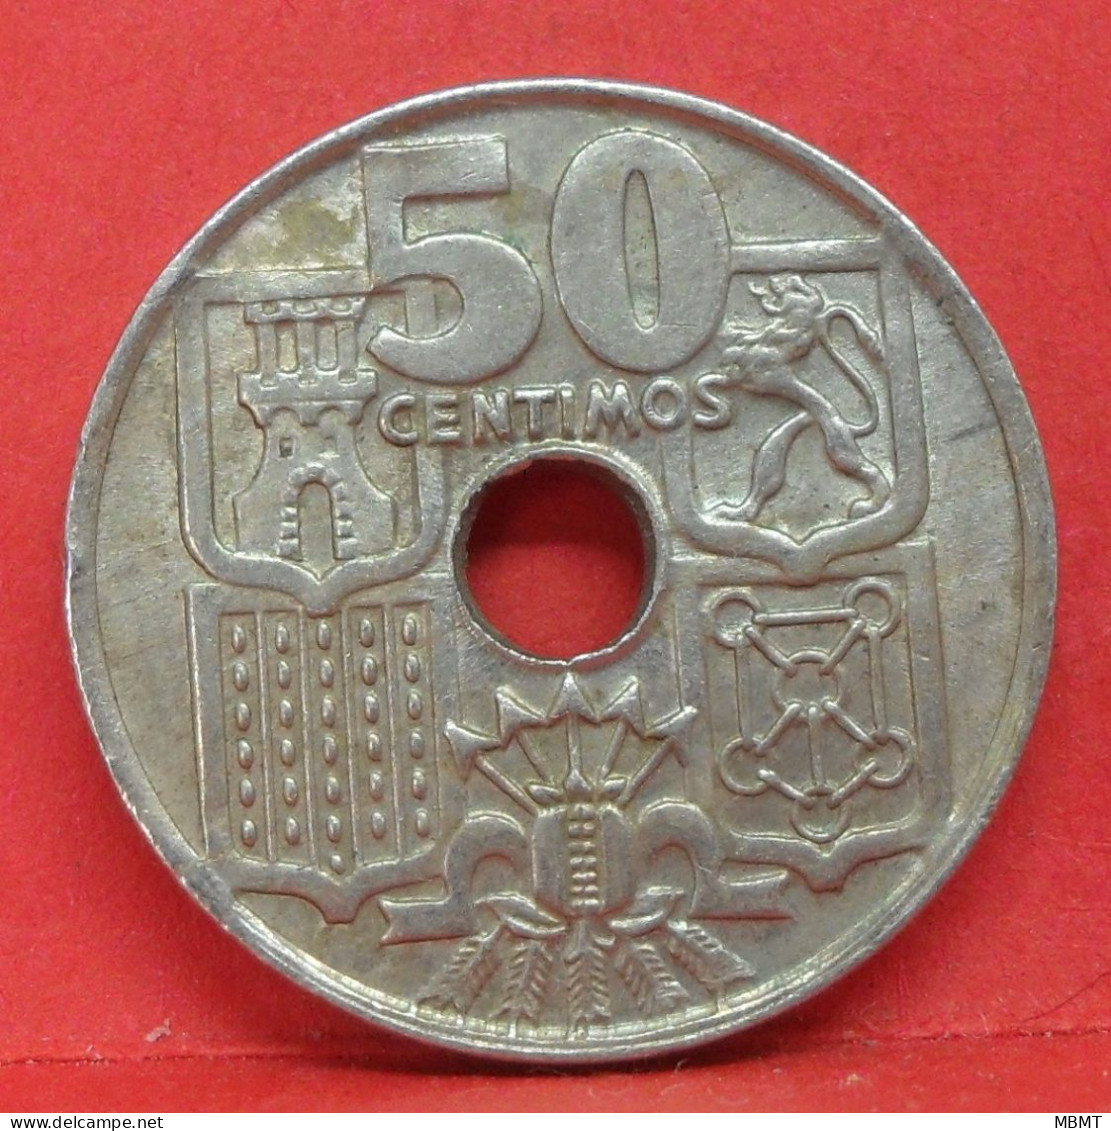 50 Centimos 1949 étoile 54 - SUP - Pièce Monnaie Espagne - Article N°2216 - 50 Centimos